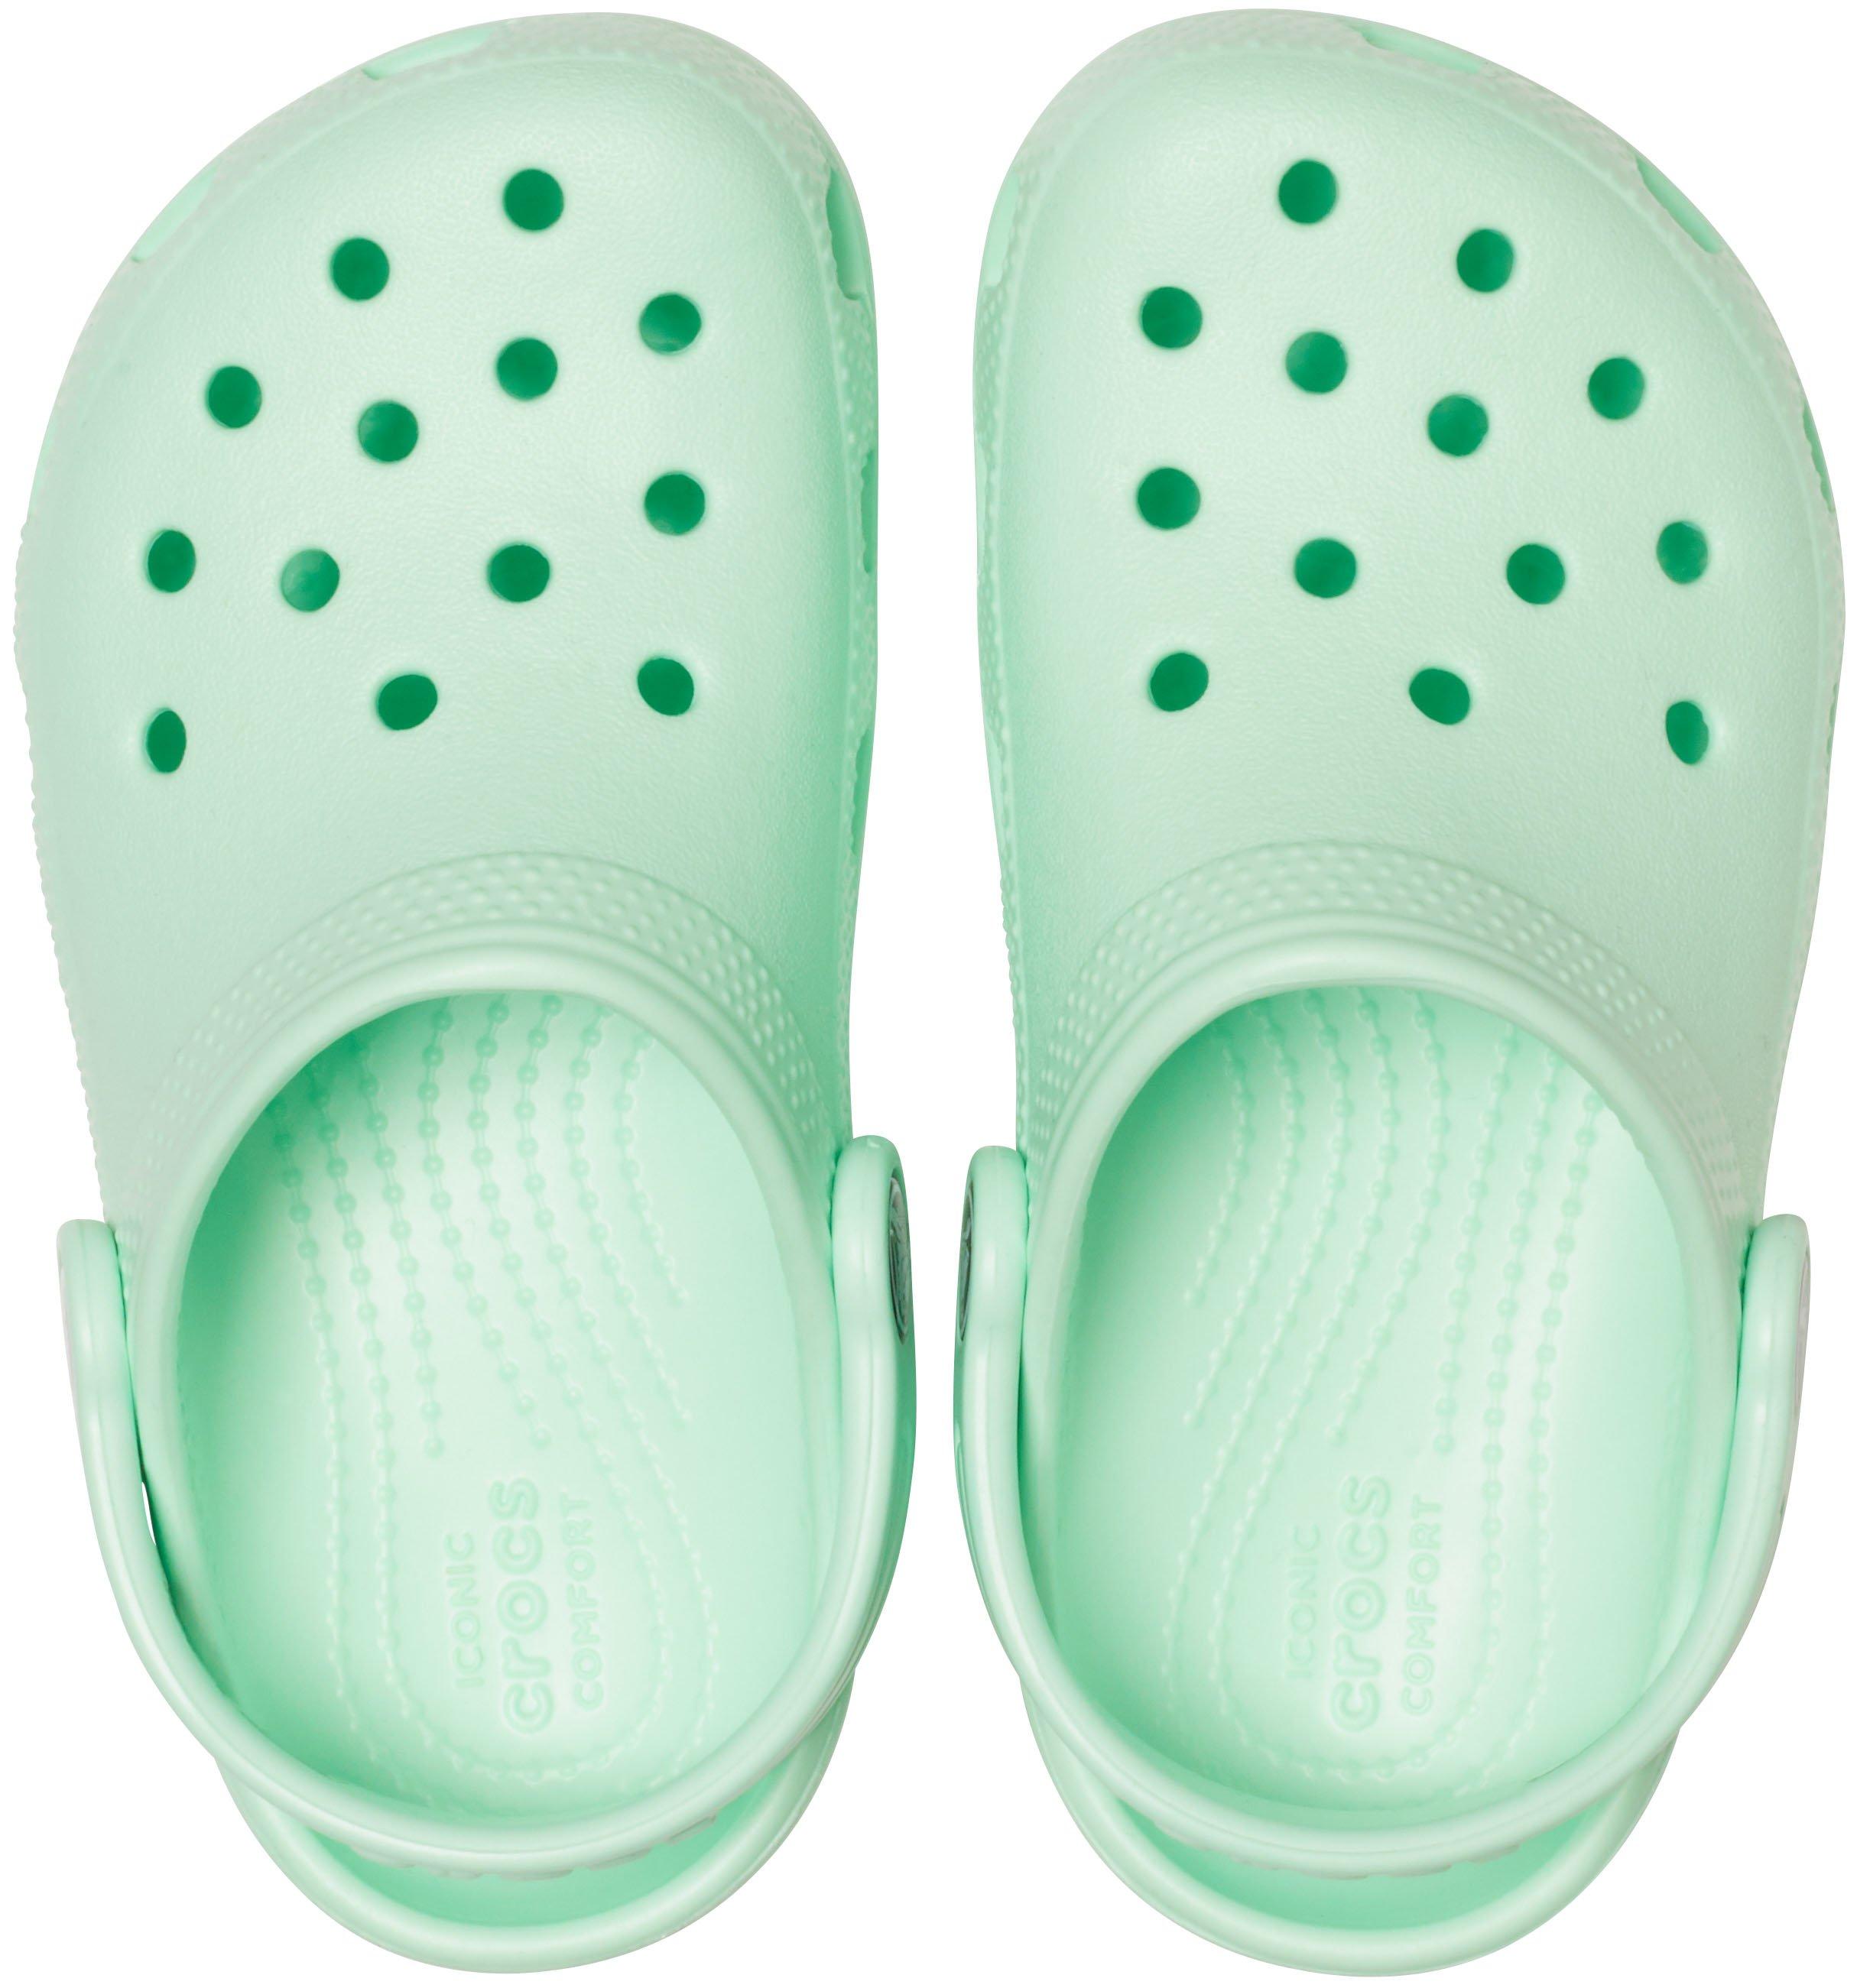 mint colored crocs